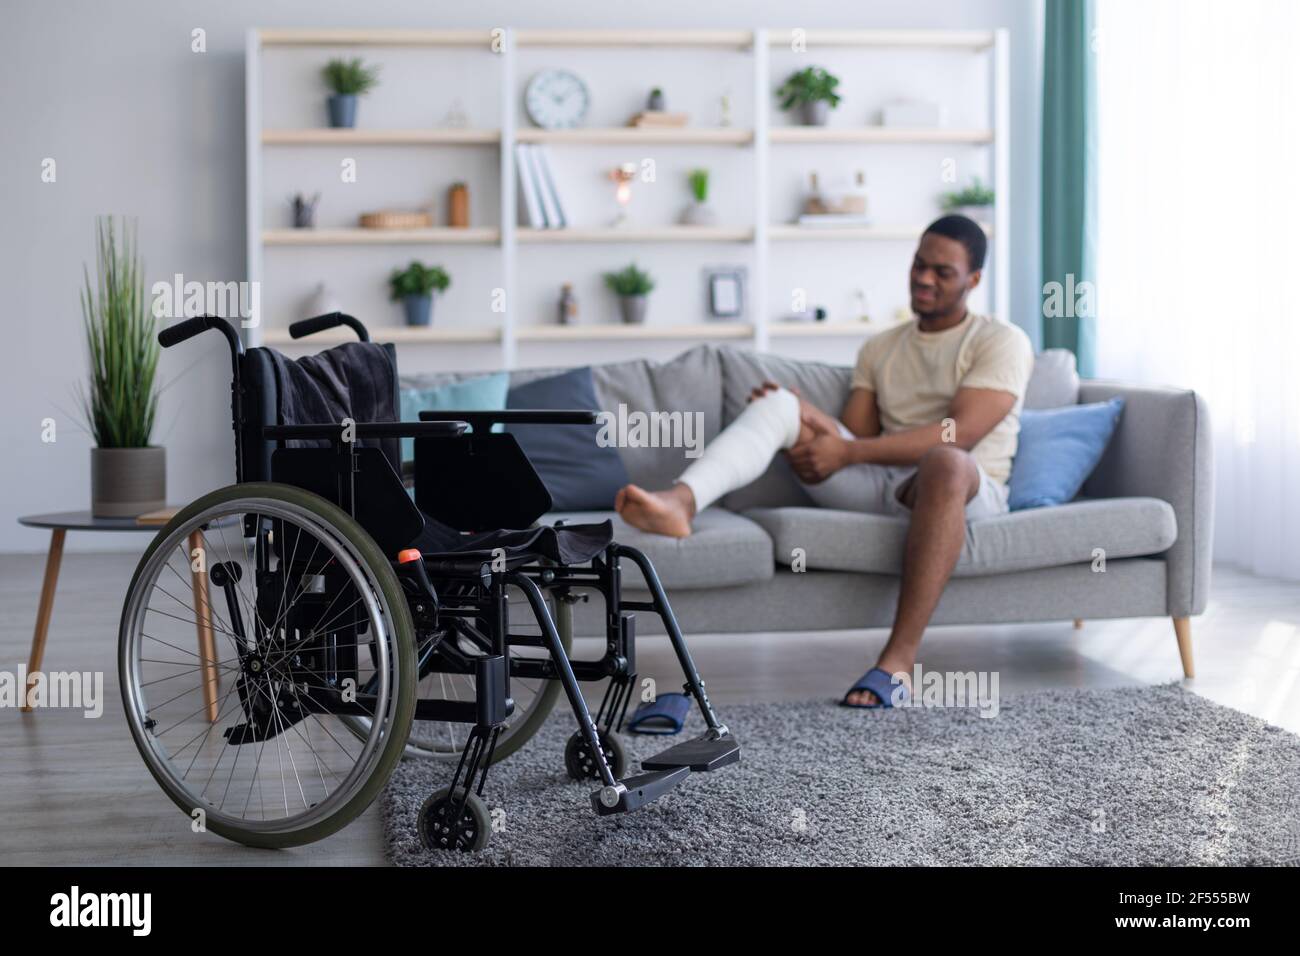 Giovane ragazzo nero con gamba rotta intonacata seduta sul divano, messa a fuoco su sedia a rotelle vuota, spazio di copia Foto Stock